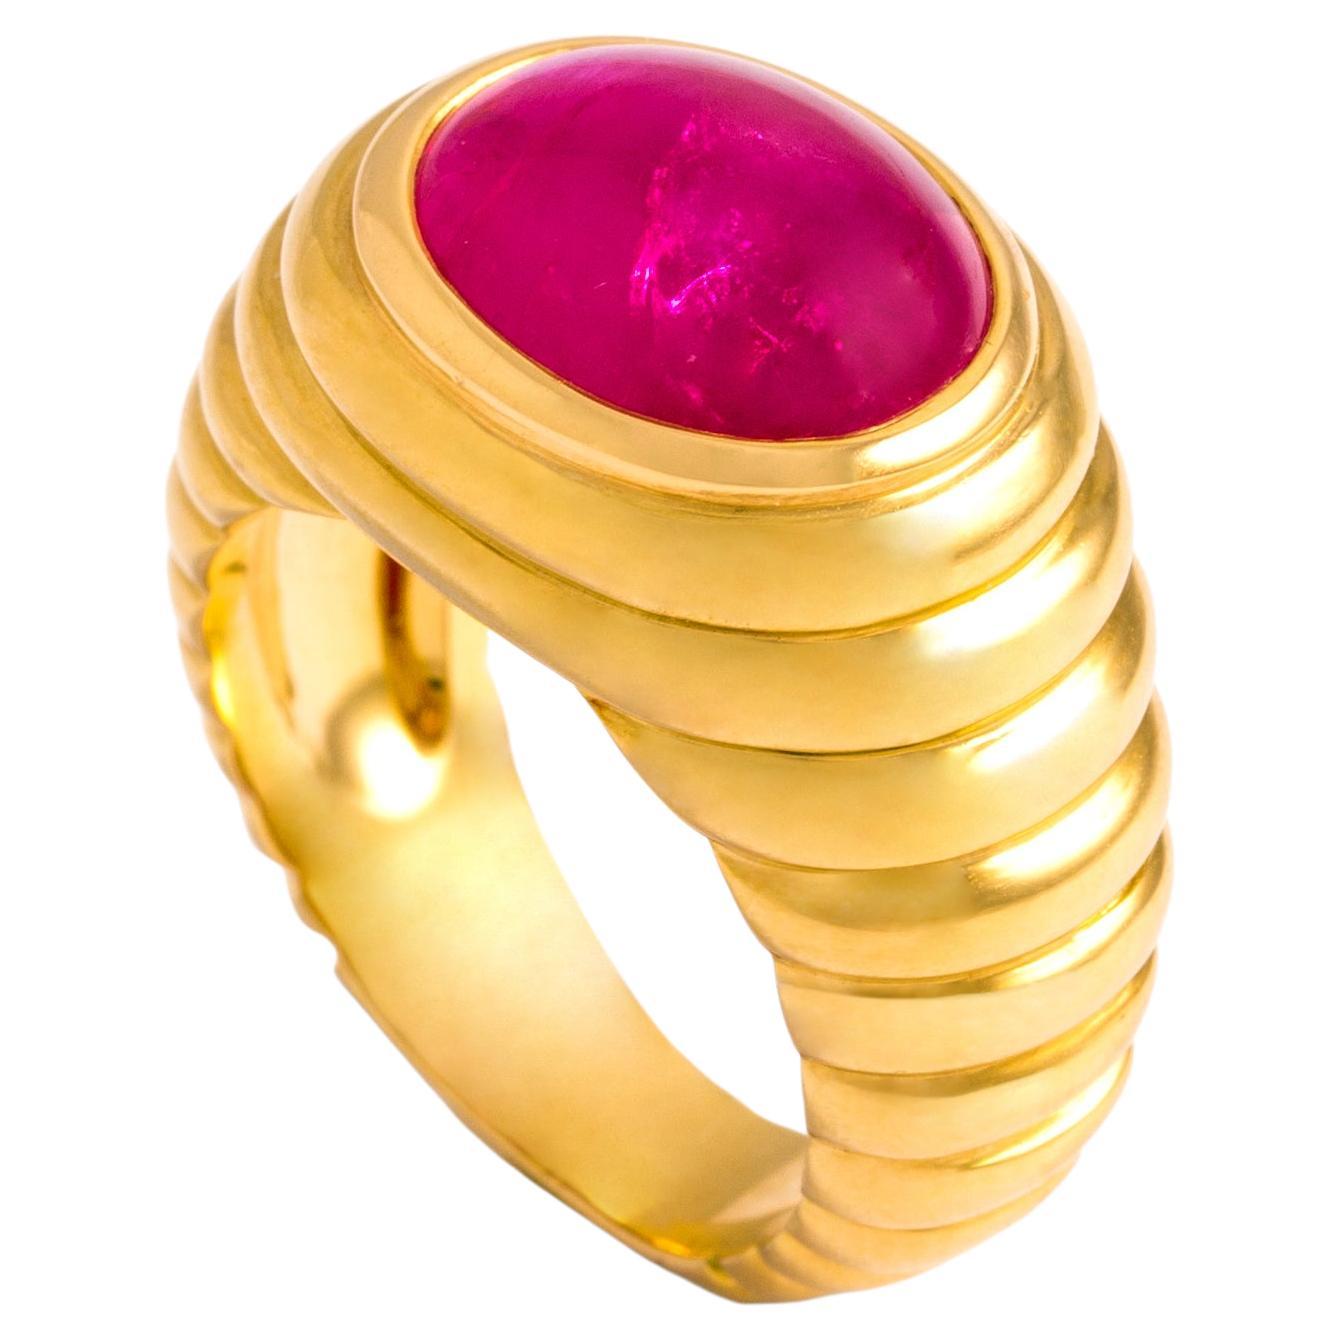 6.20 Carat Ruby Gold Ring